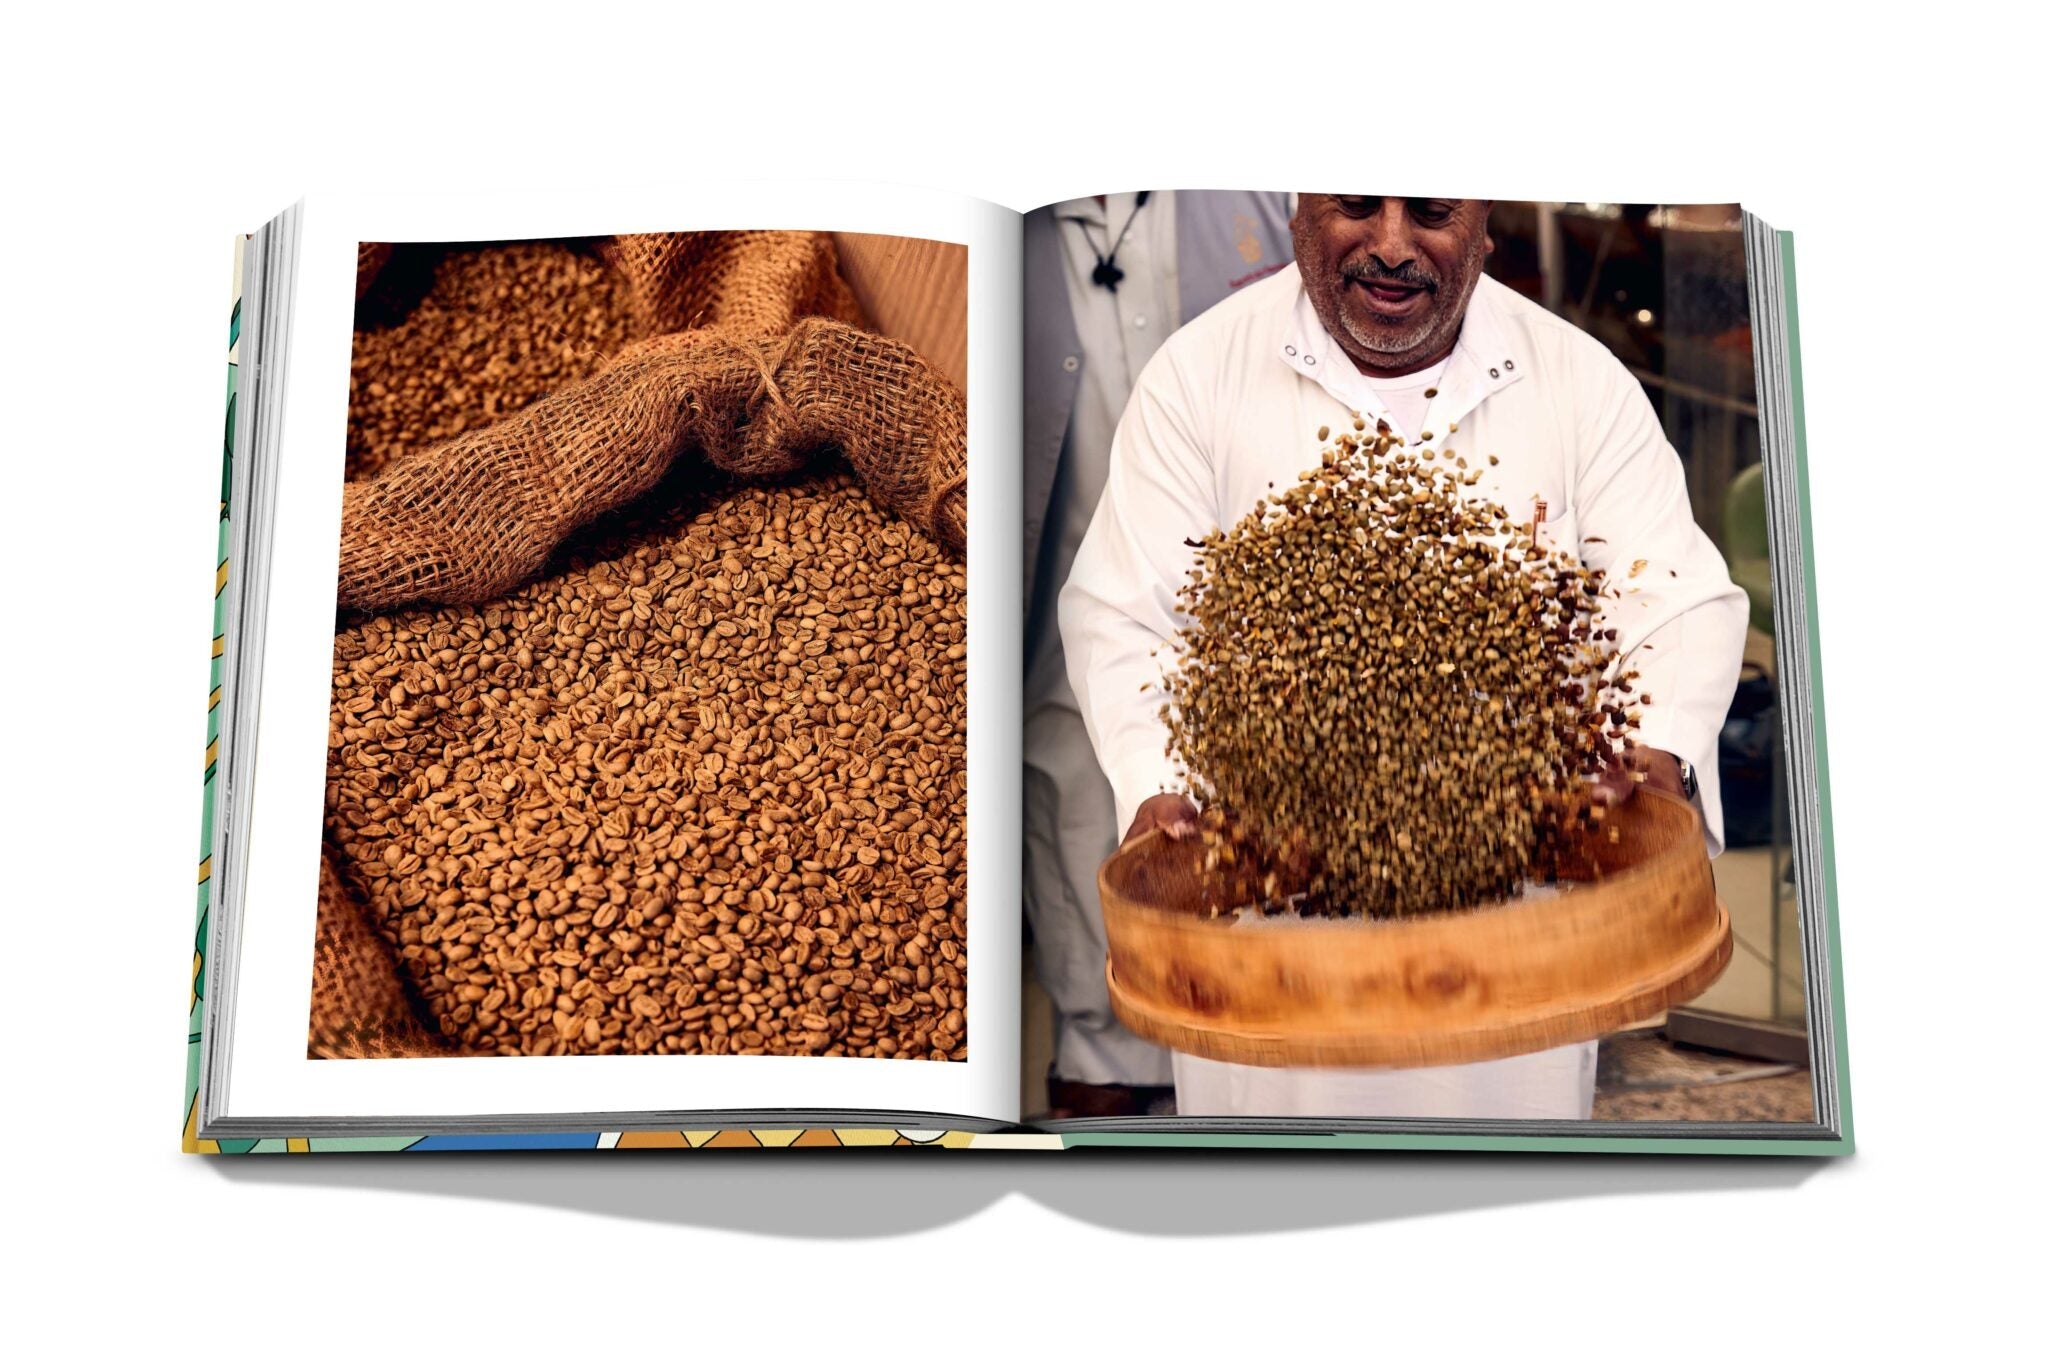 Assouline Saudi Coffee: de cultuur van gastvrijheid